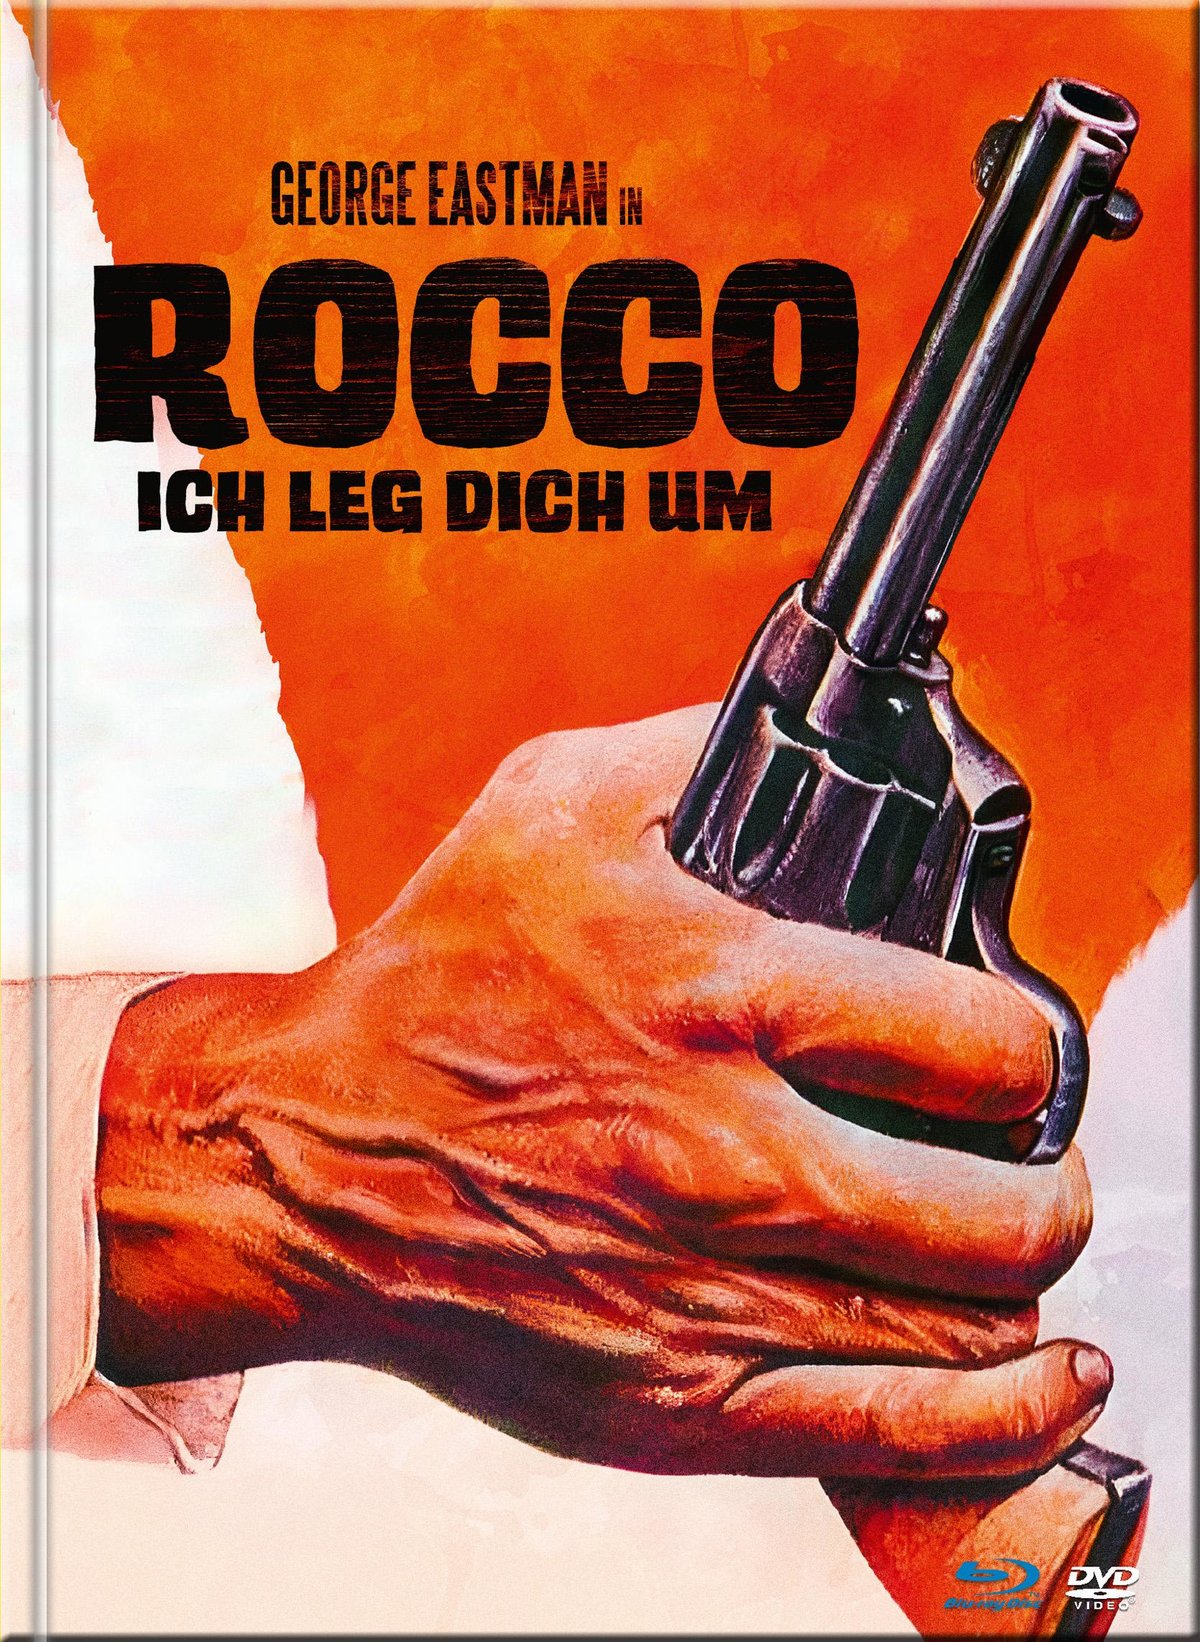 Rocco - Ich leg dich um - Uncut Mediabook Edition  (DVD+blu-ray)